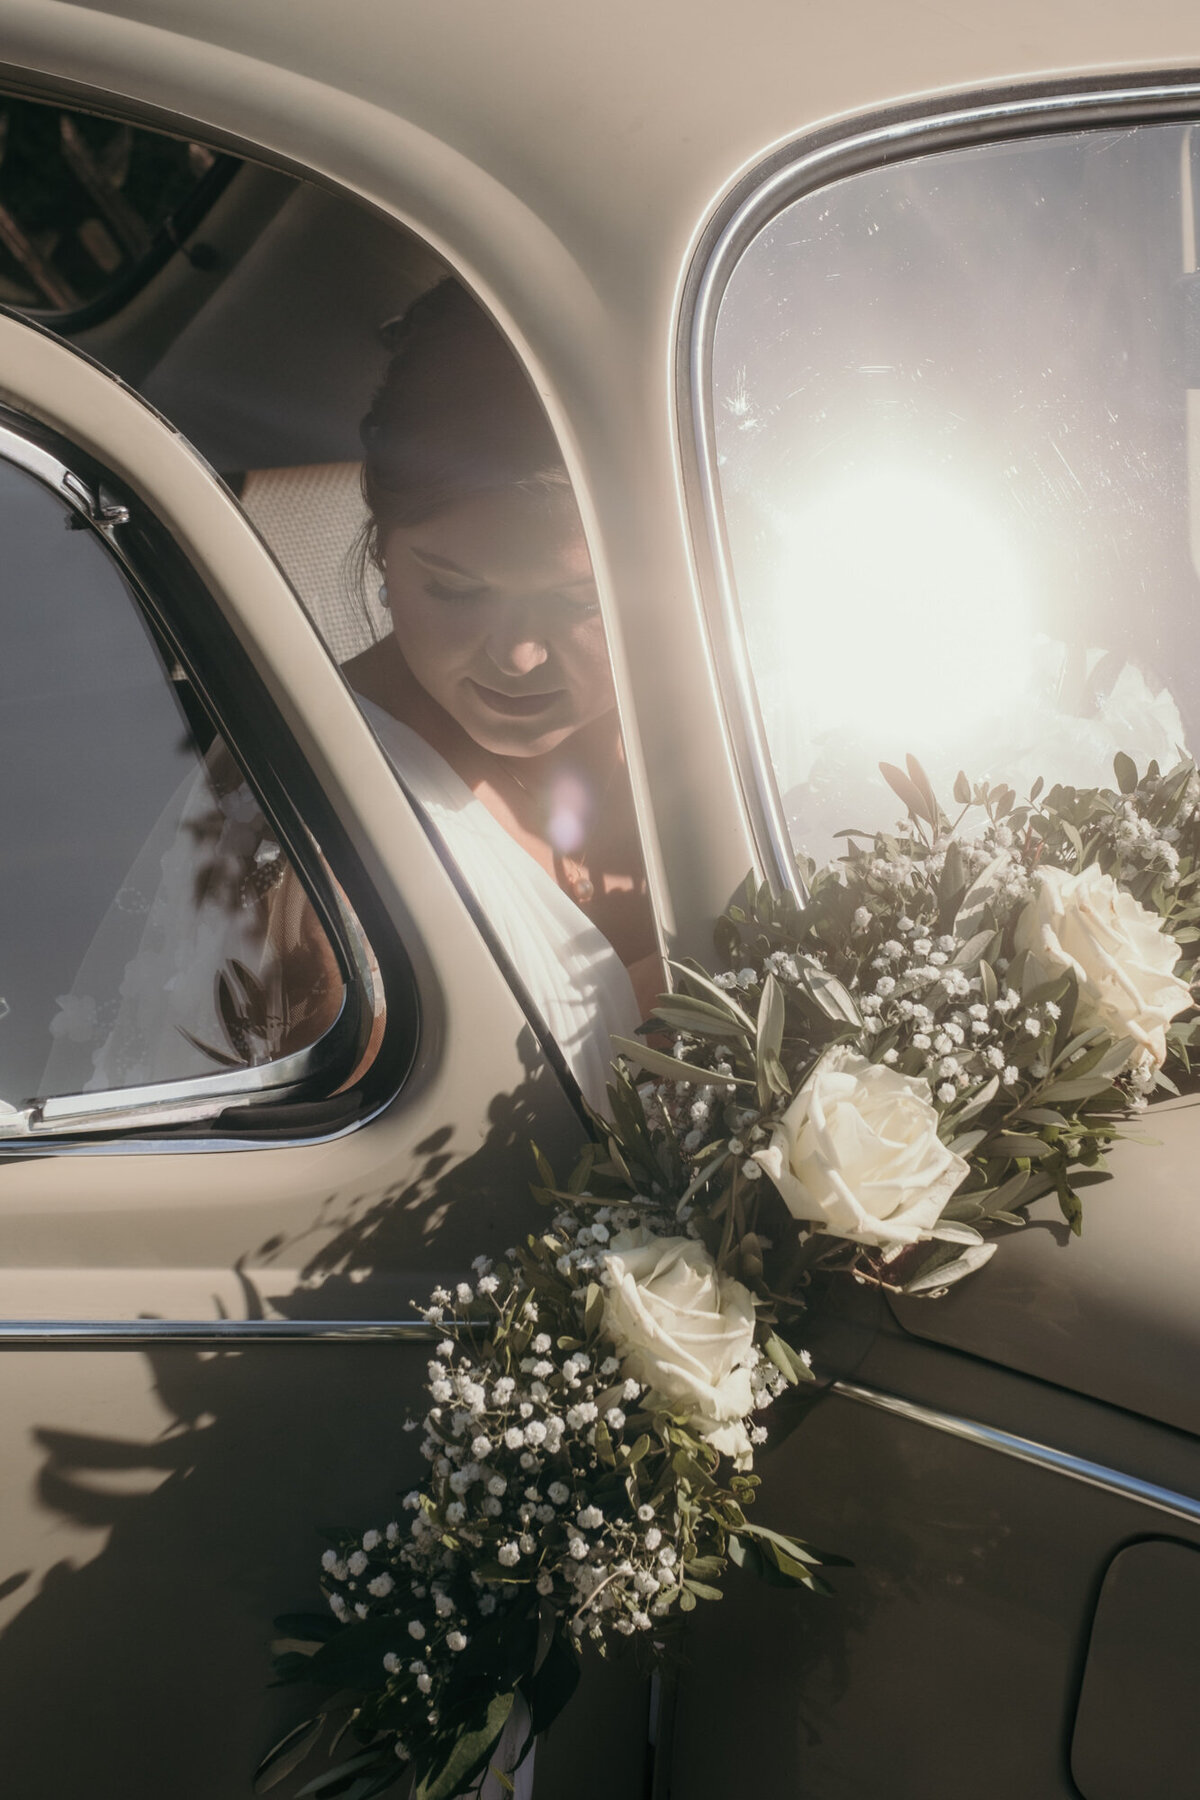 Dieser Ausschnitt zeigt, wie die Braut gerade in das mit Blumen geschmückte Hochzeitsauto eingestiegen ist.